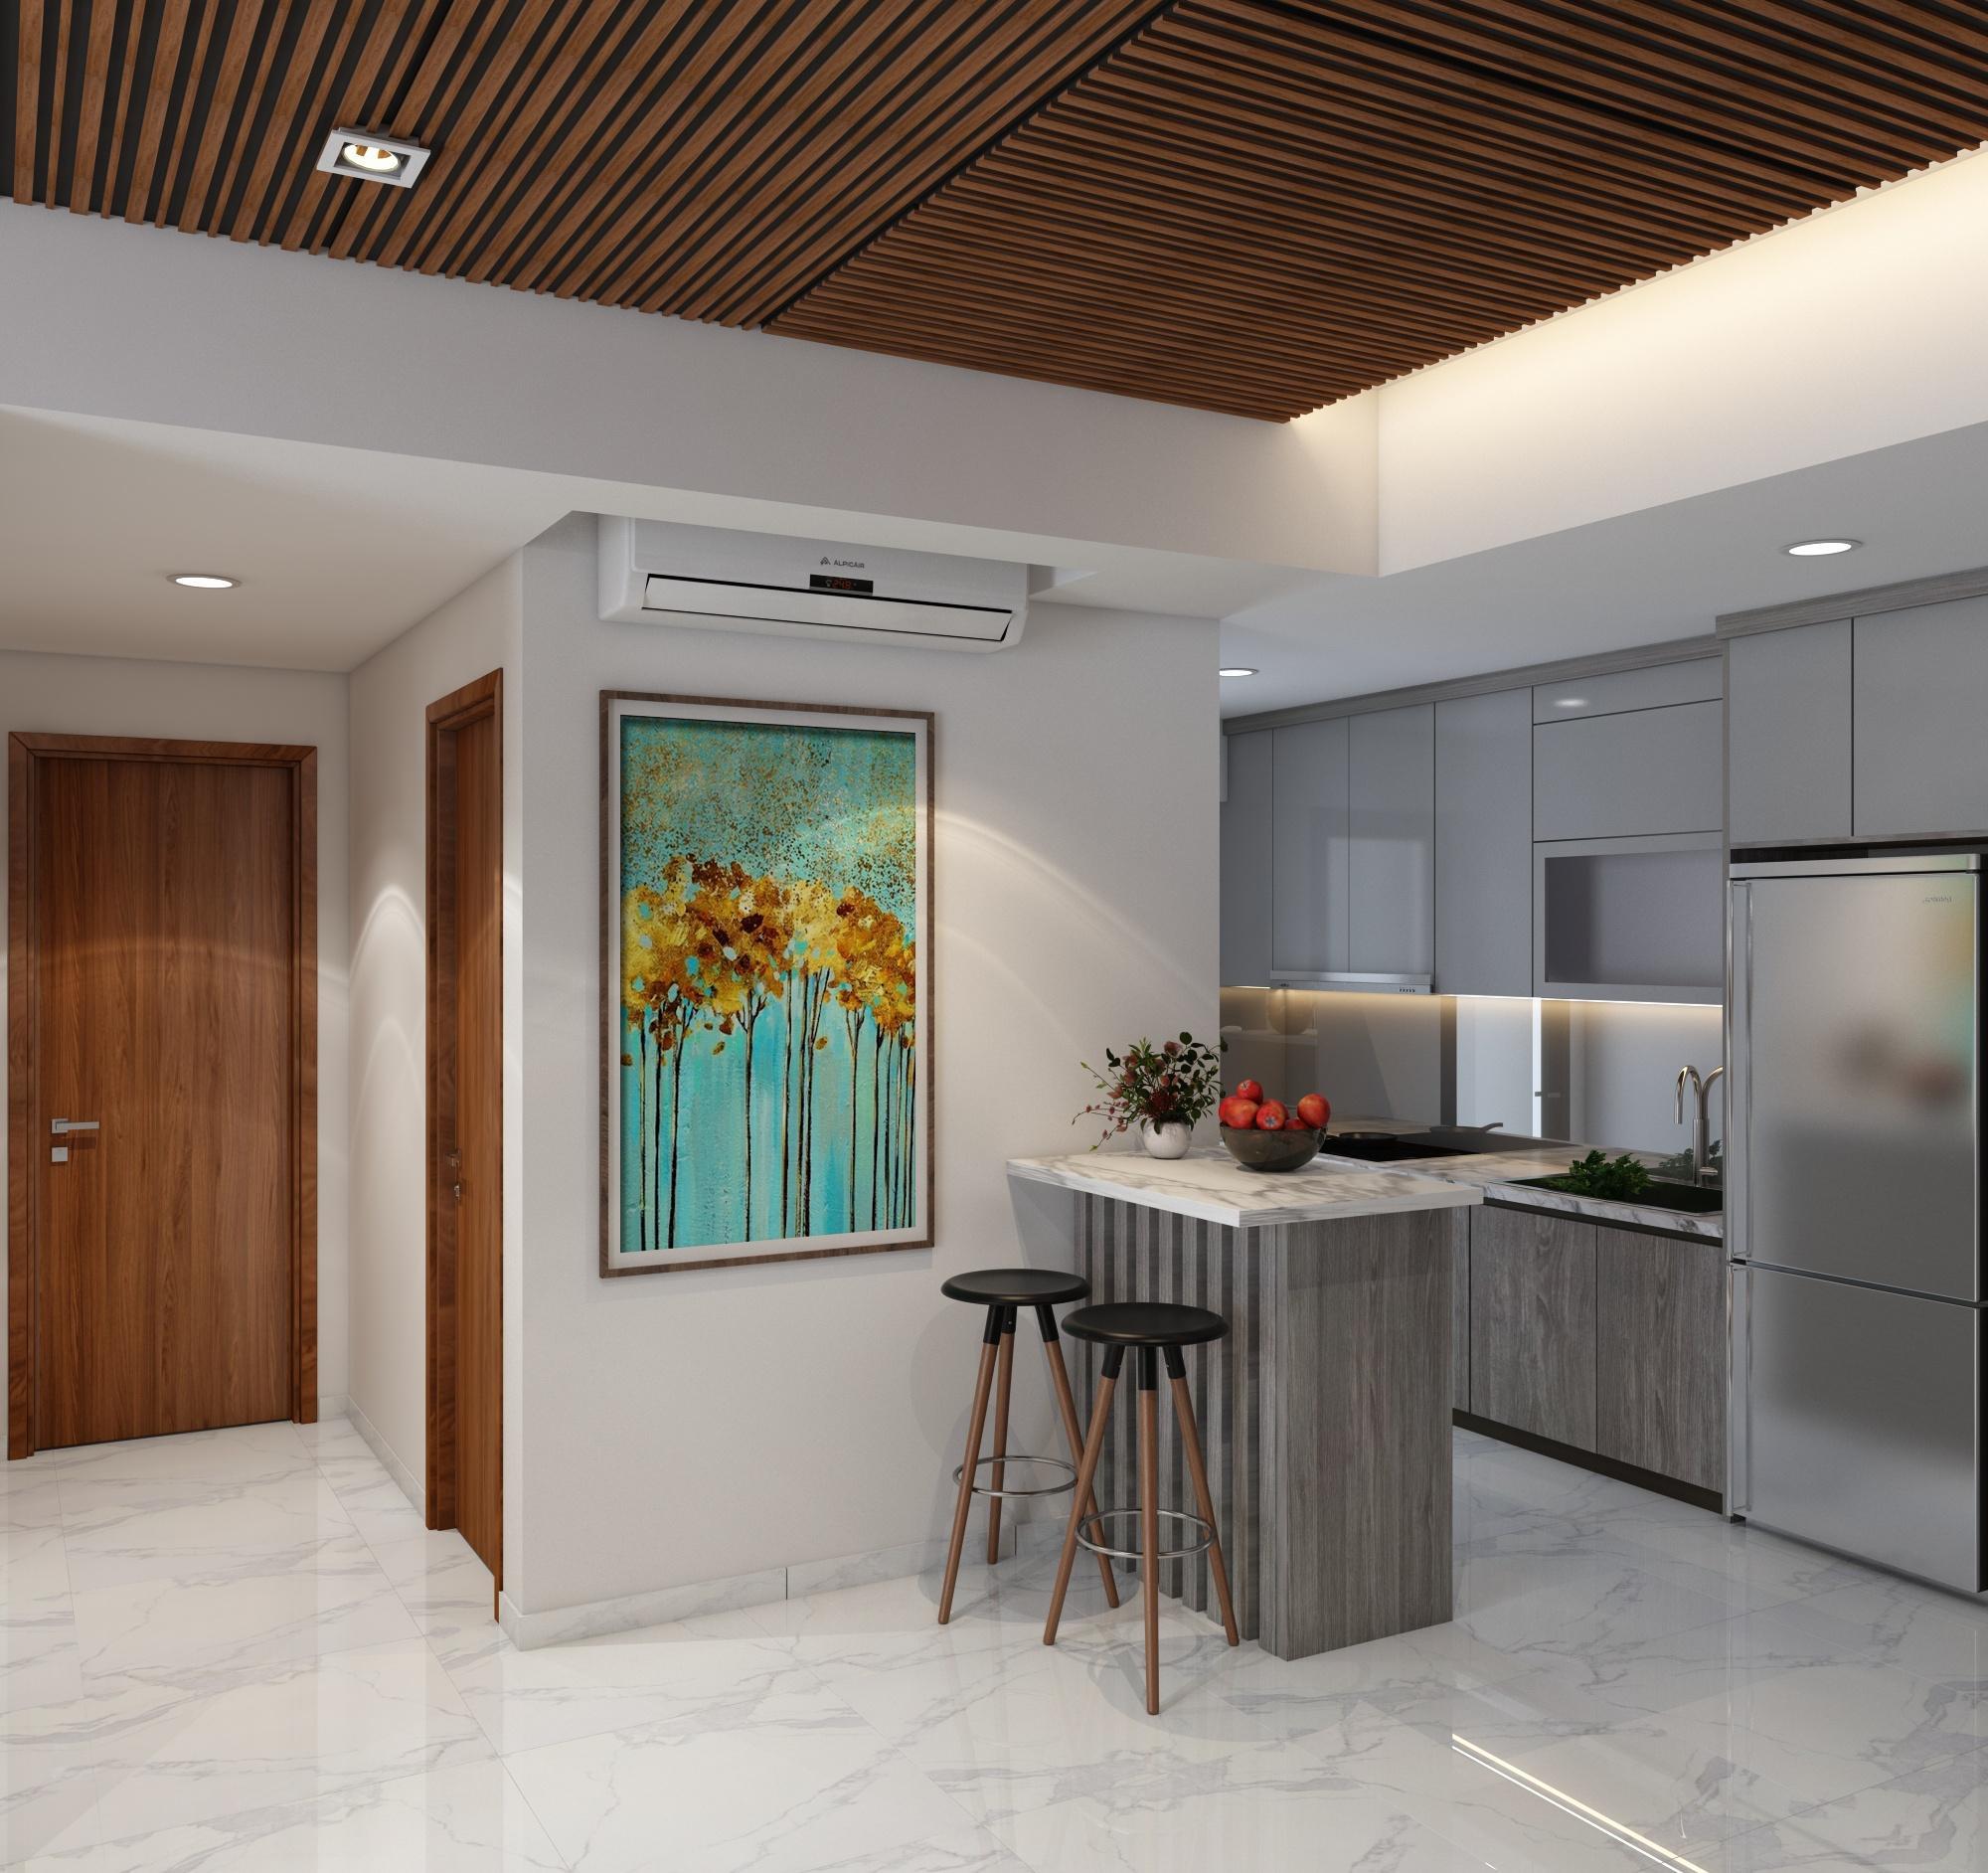 Căn hộ 2PN Tại Phú Mỹ Hưng, Cho thuê 27tr - 2BR Apartment for rent in Midtown D7 27 Million!